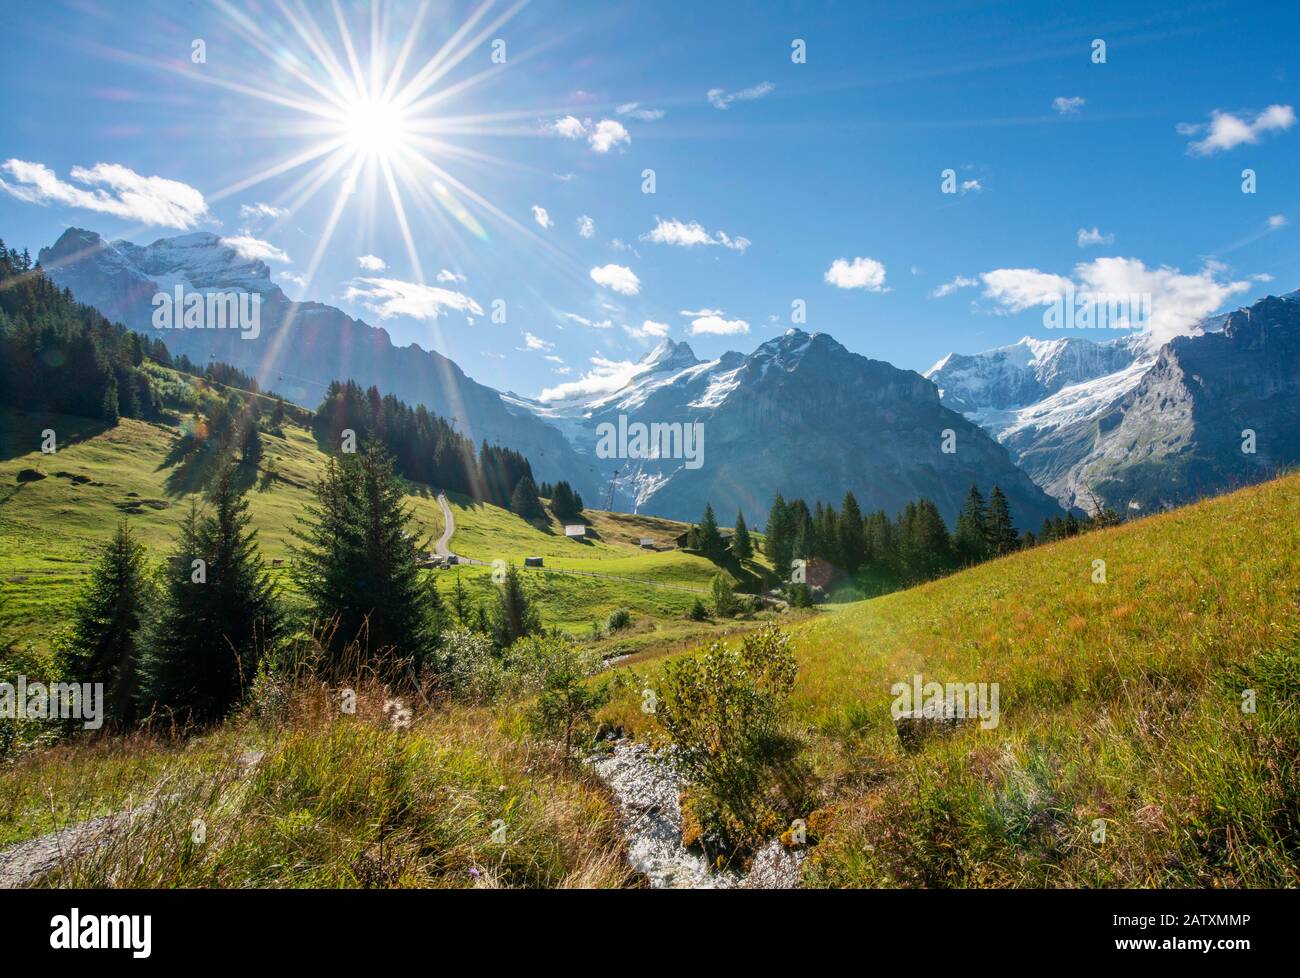 Kleiner Bach bei strahlendem Sonnenschein, schneebedecktes Schreckhorn, Wetterhorn und Eiger im Rücken, Grindelwald, Bern, Schweiz Stockfoto